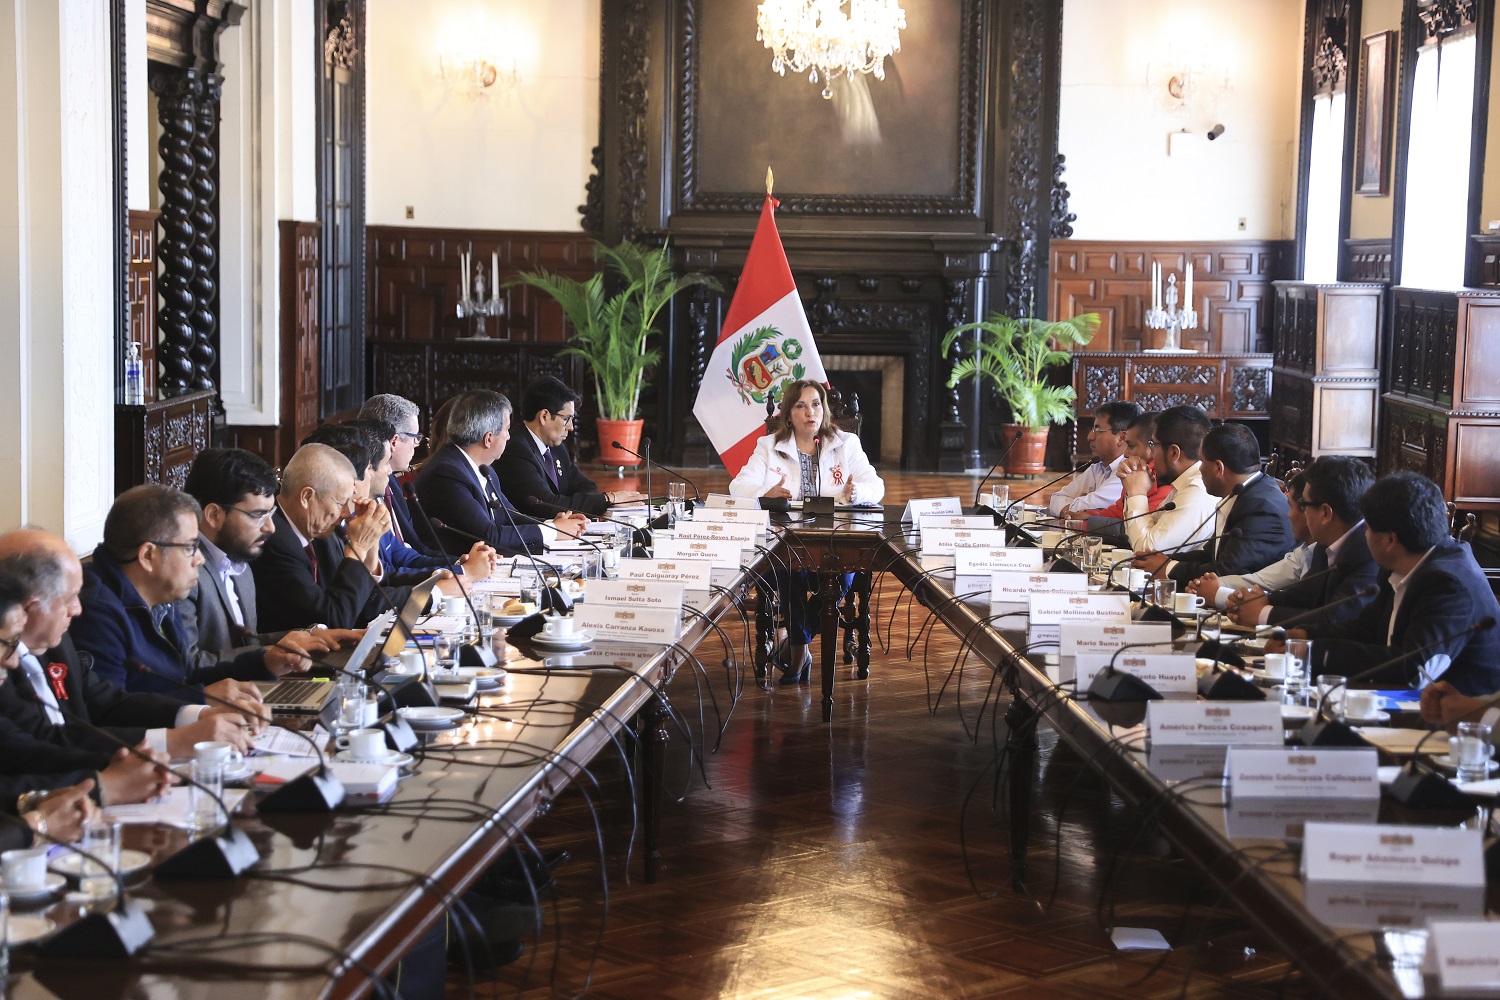 En reunión de alcaldes de Puno, Cusco y la presidenta Dina Boluarte, coinciden en trabajar conjuntamente con diálogo, unidad y paz social.